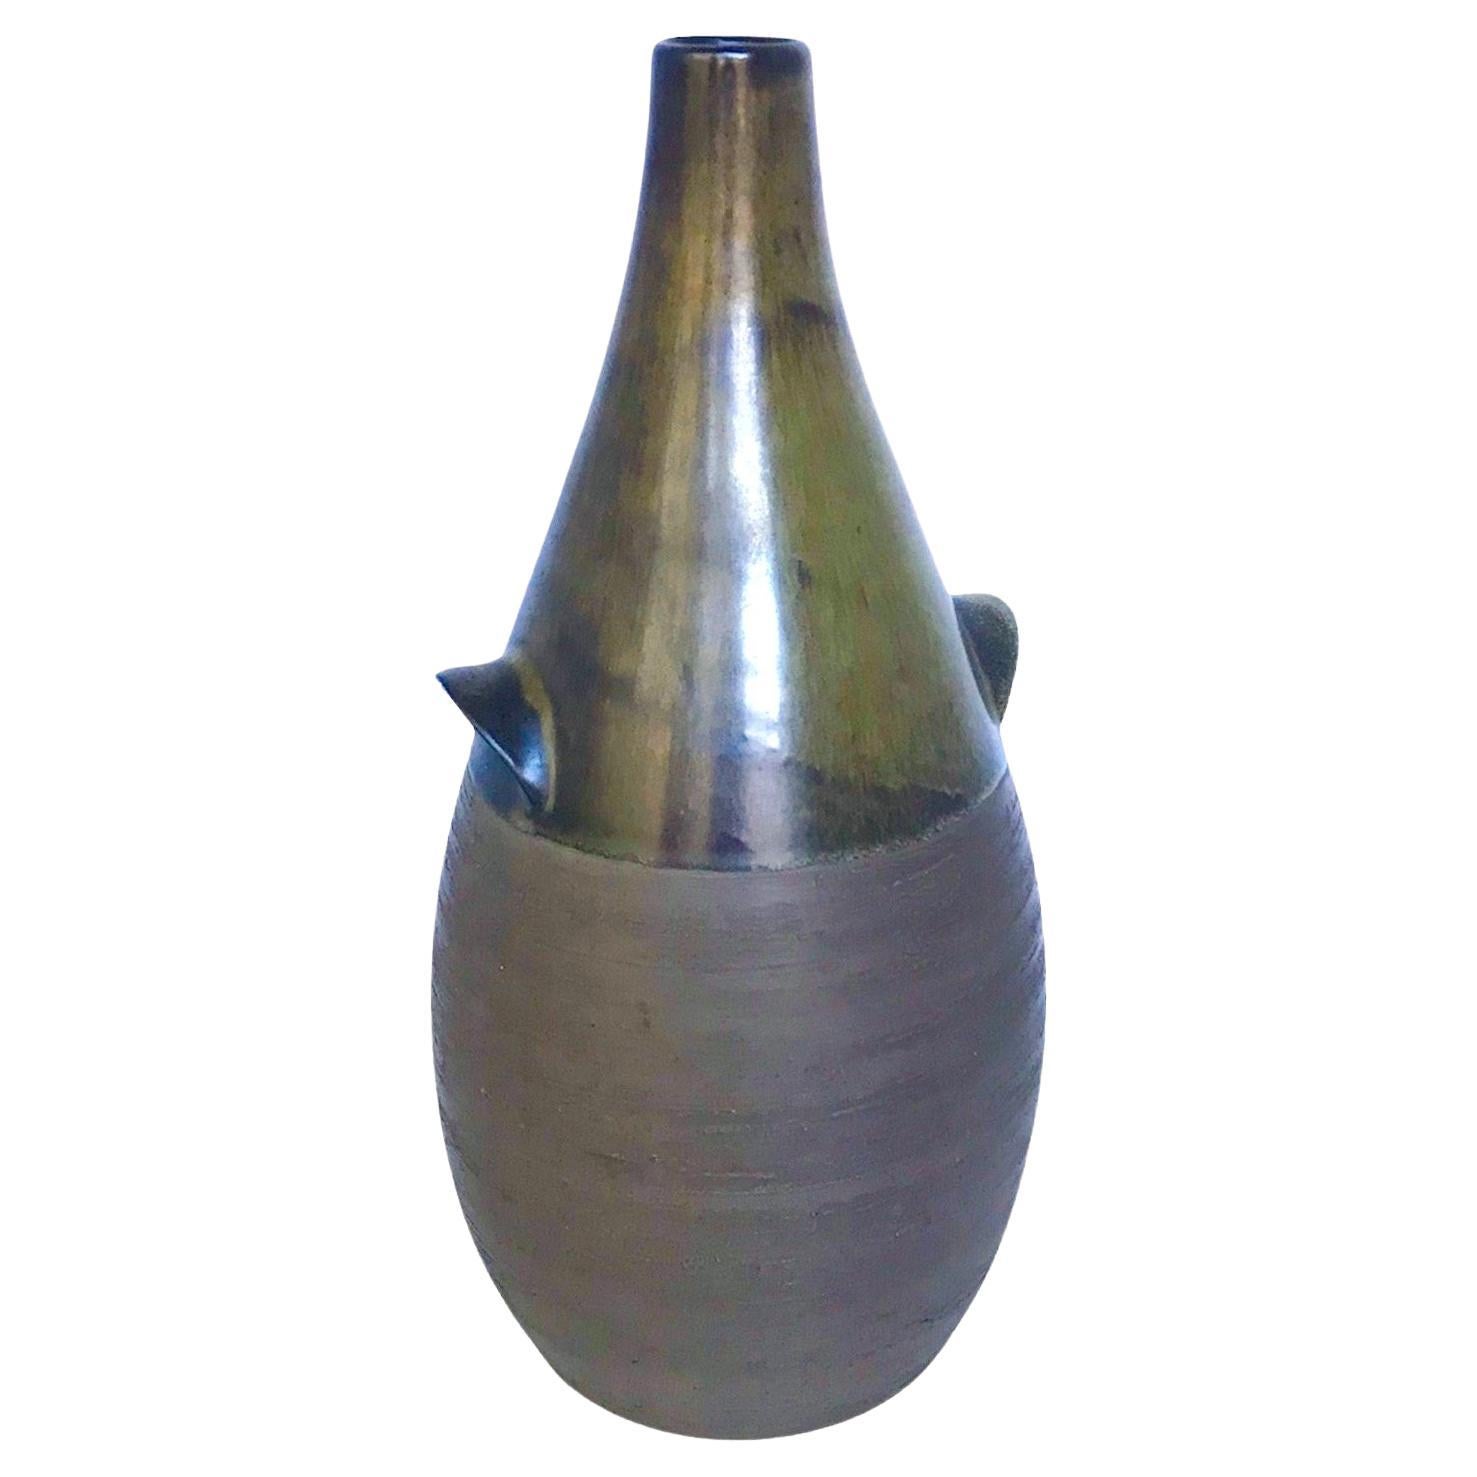 (okoko)Scandinavian Mid Century Modern Pottery Bottle Vase from BR Denmark 1960s